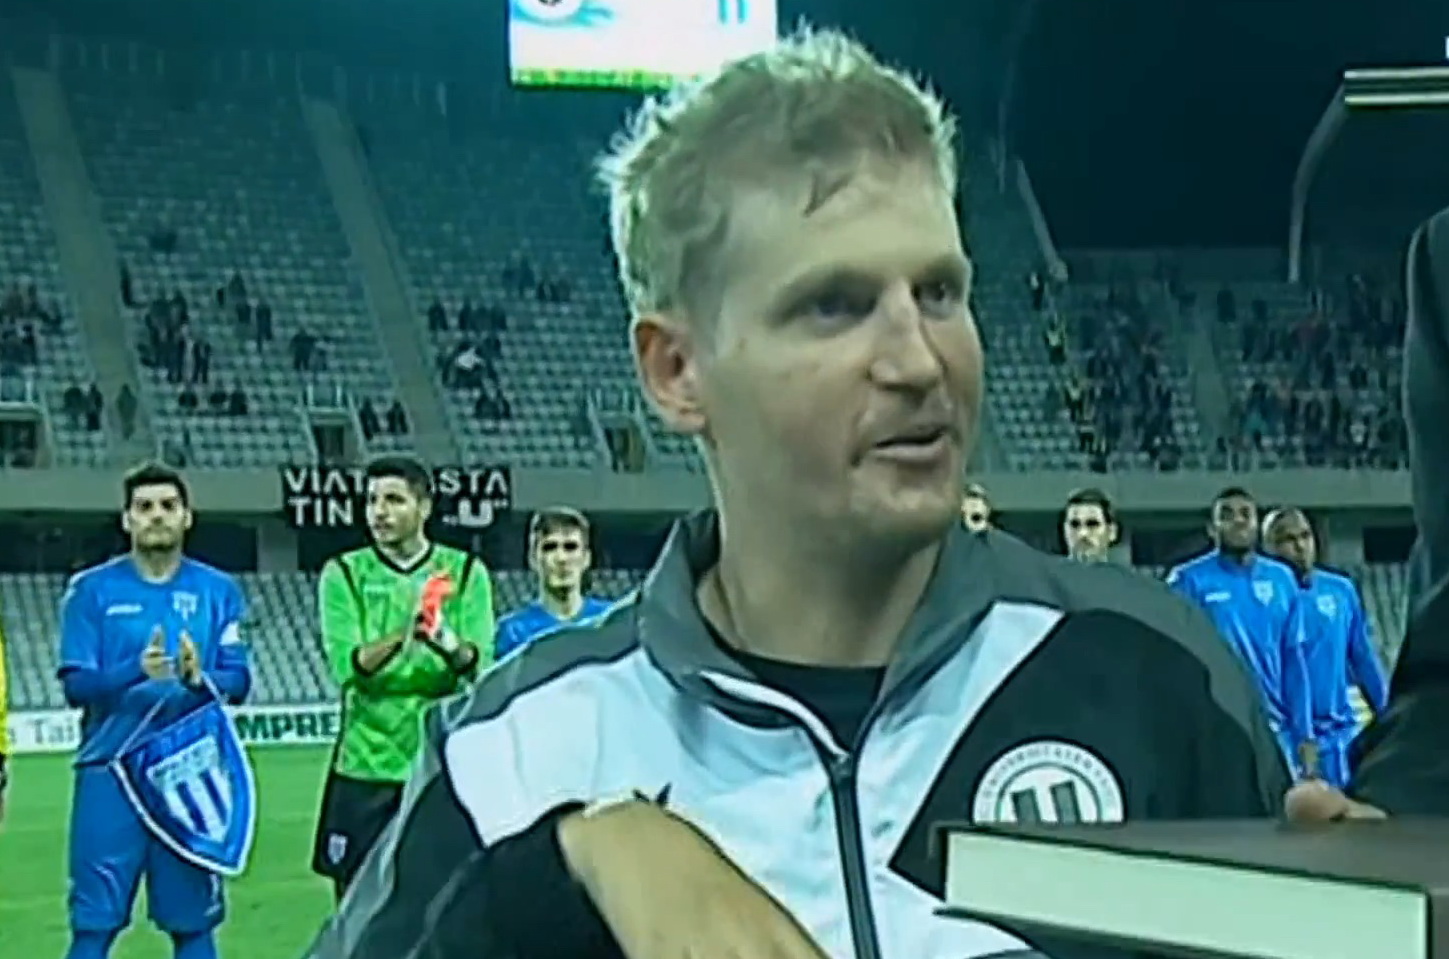 Inaintea meciului, Mihai Nesu a fost premiat de un reprezentant al Ligii Profesioniste de Fotbal (Captura Look TV)